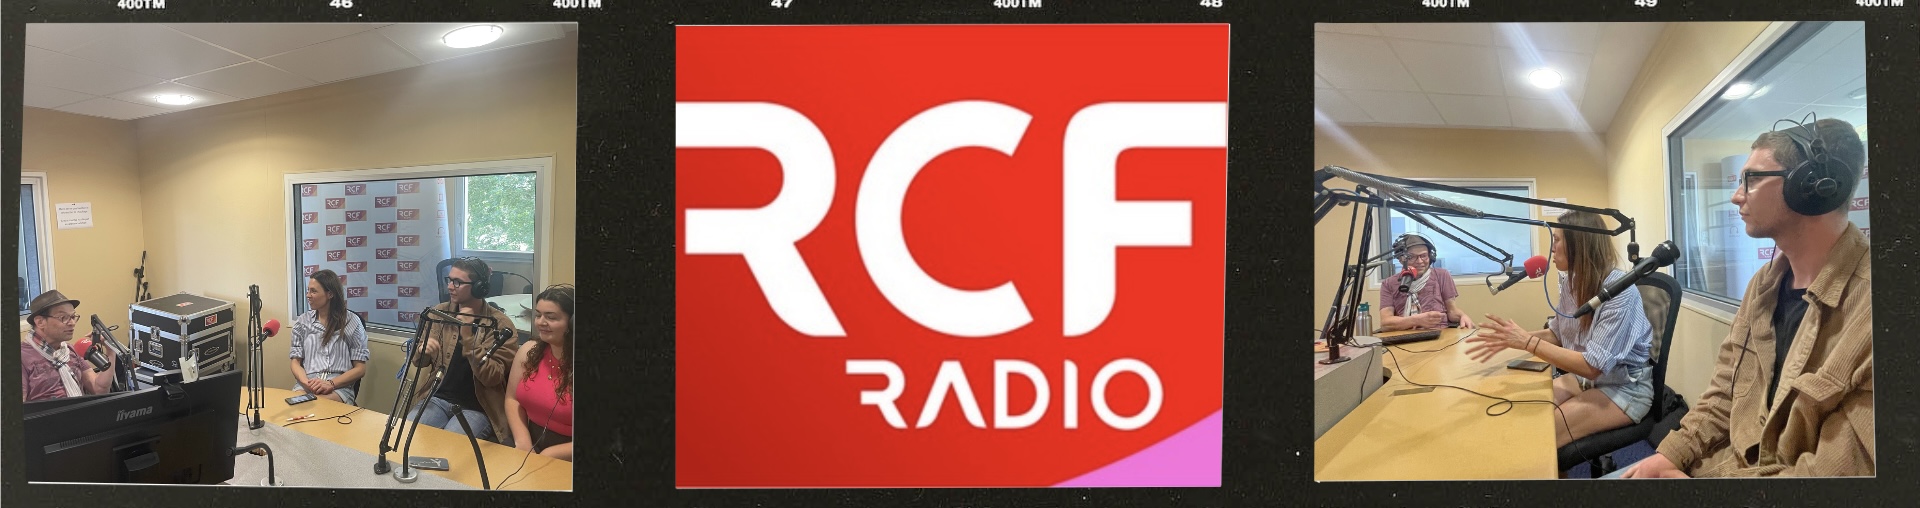 Emission de radio à la Radio Chrétienne France pour promouvoir le concert Women want to be heard